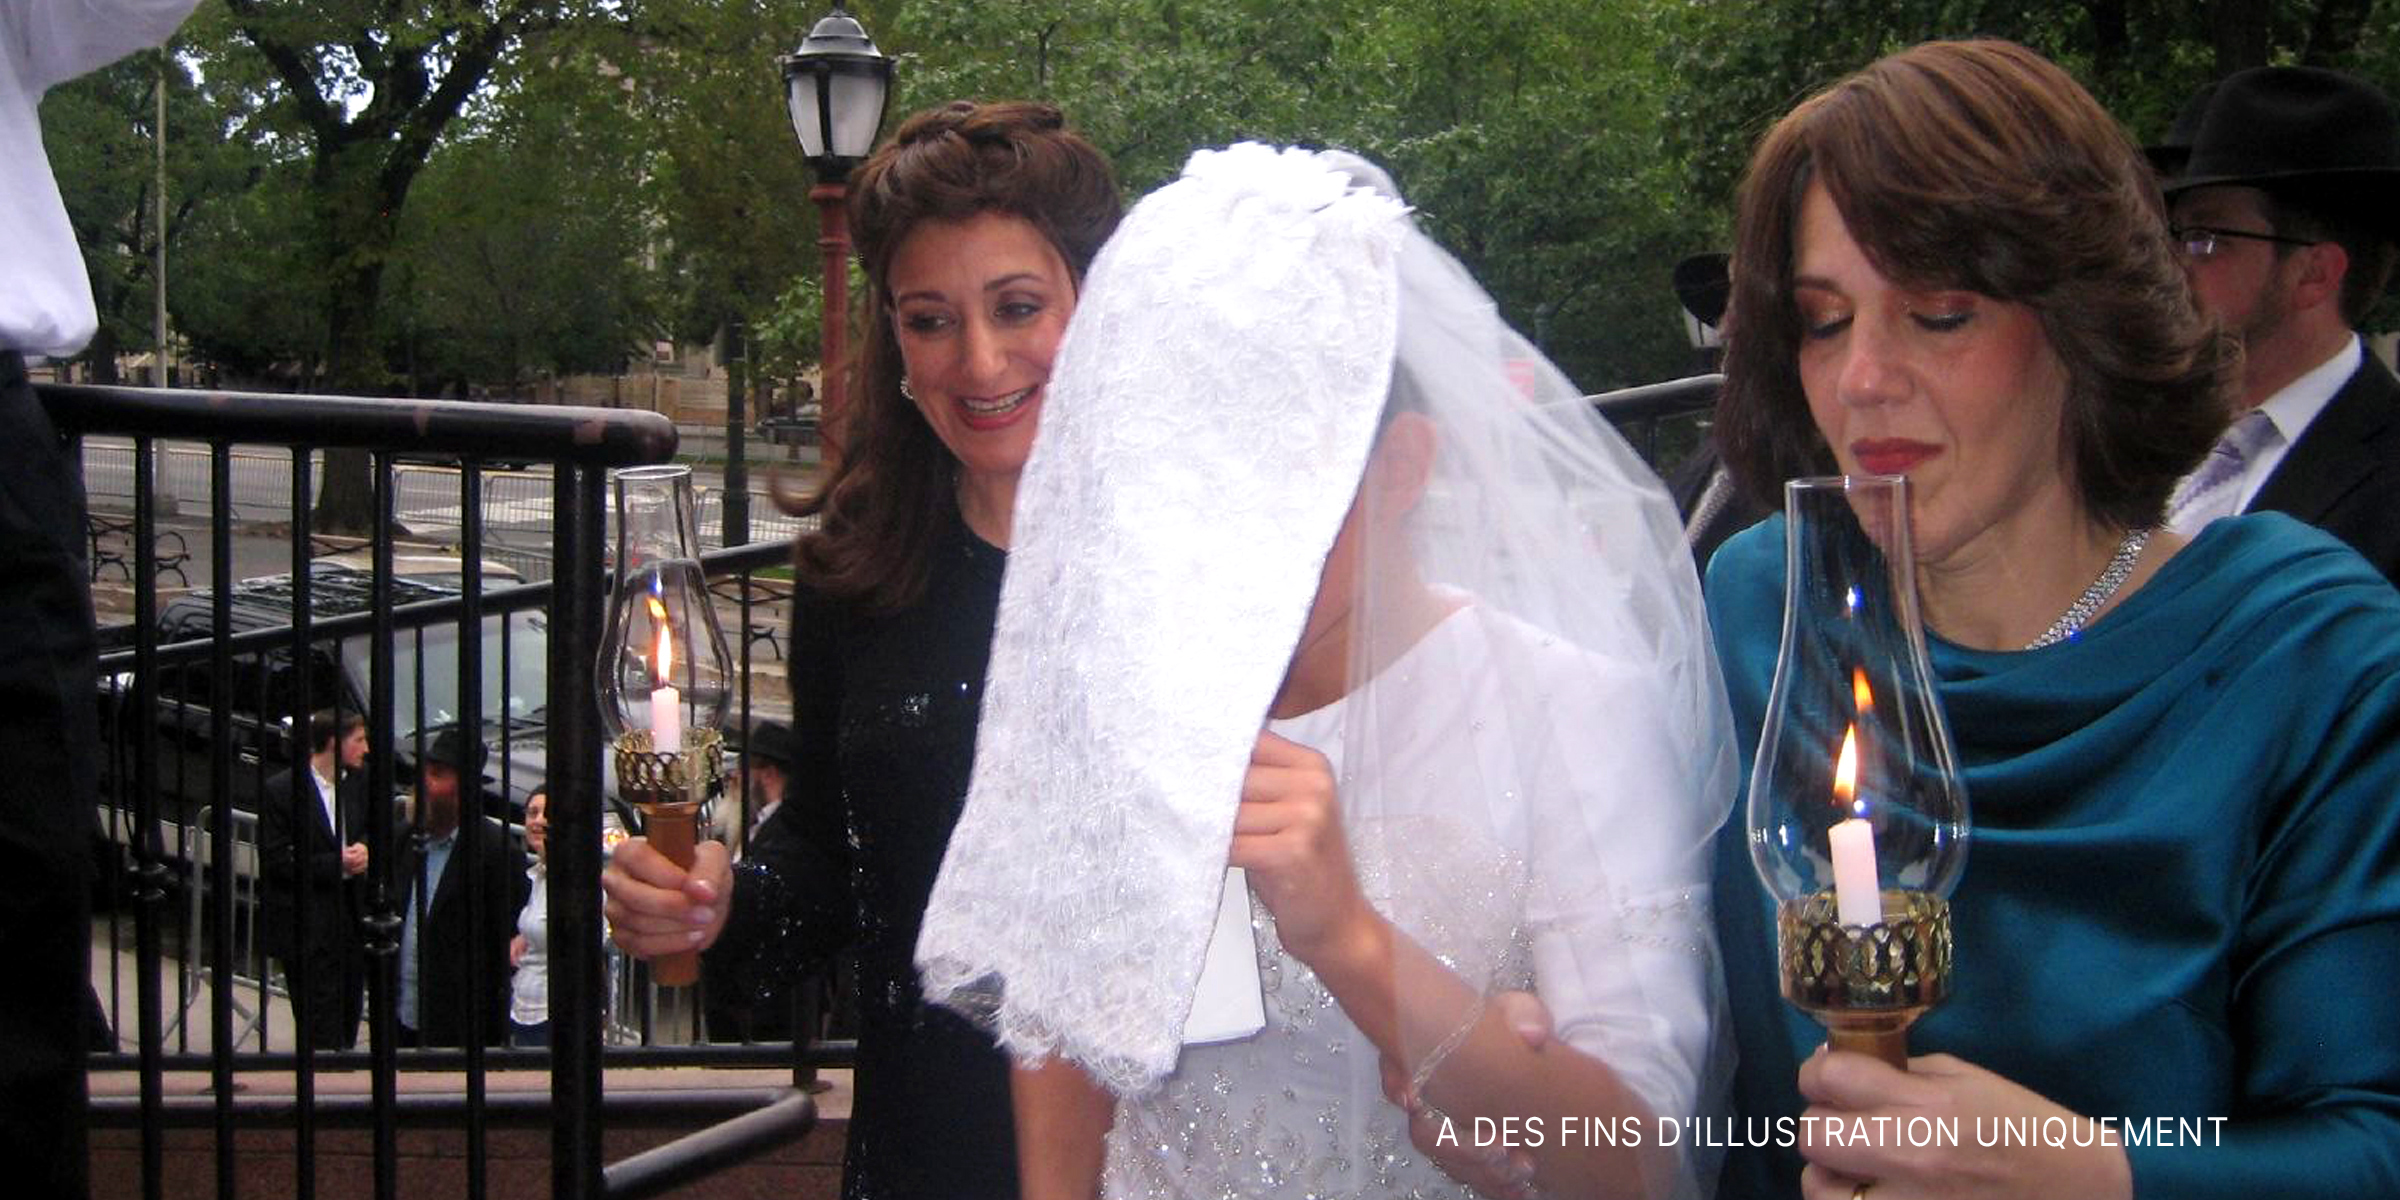 Une mariée escortée par deux femmes tenant des lampes | Source : Flickr.com/goldberg/CC BY-SA 2.0